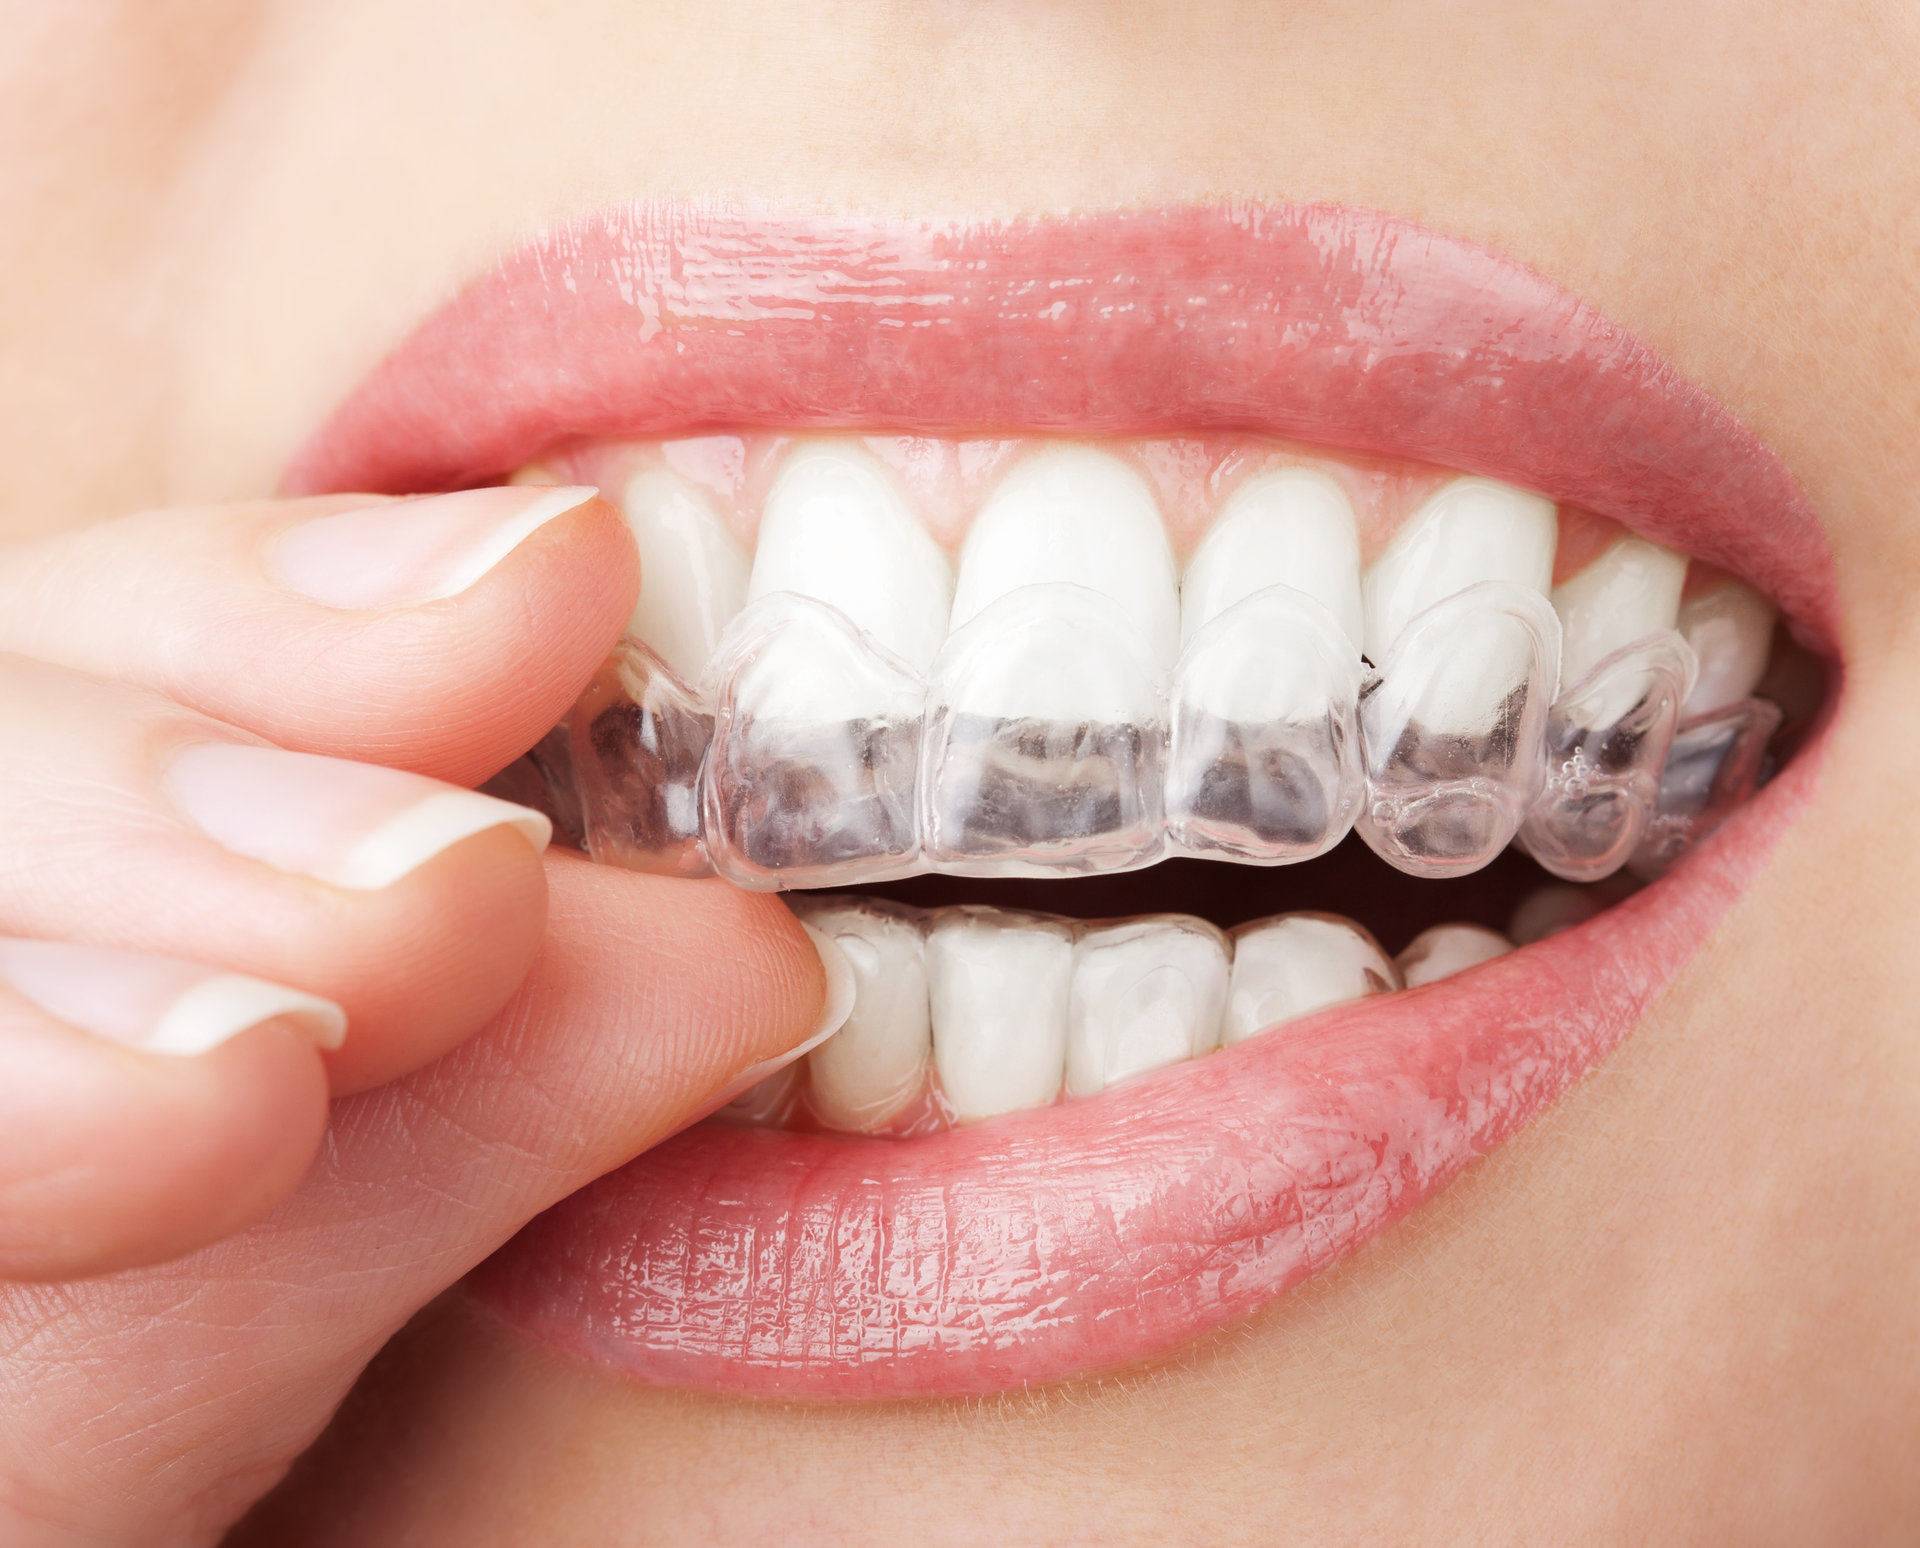 Sbiancamento dentale: come funziona e cosa si fa